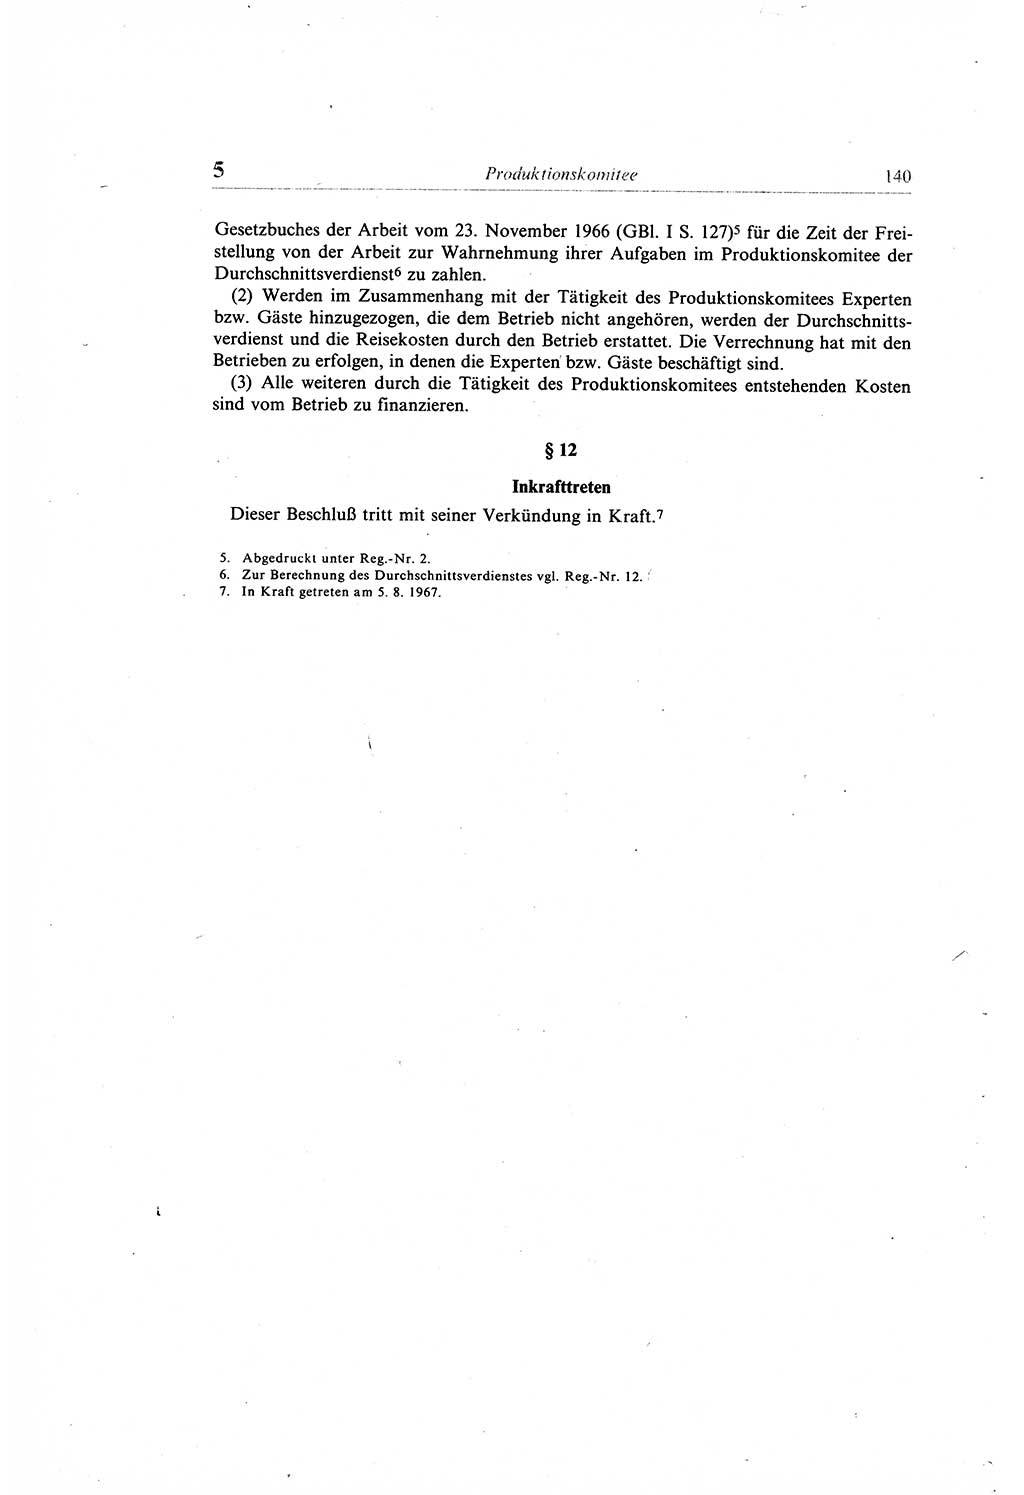 Gesetzbuch der Arbeit (GBA) und andere ausgewählte rechtliche Bestimmungen [Deutsche Demokratische Republik (DDR)] 1968, Seite 140 (GBA DDR 1968, S. 140)